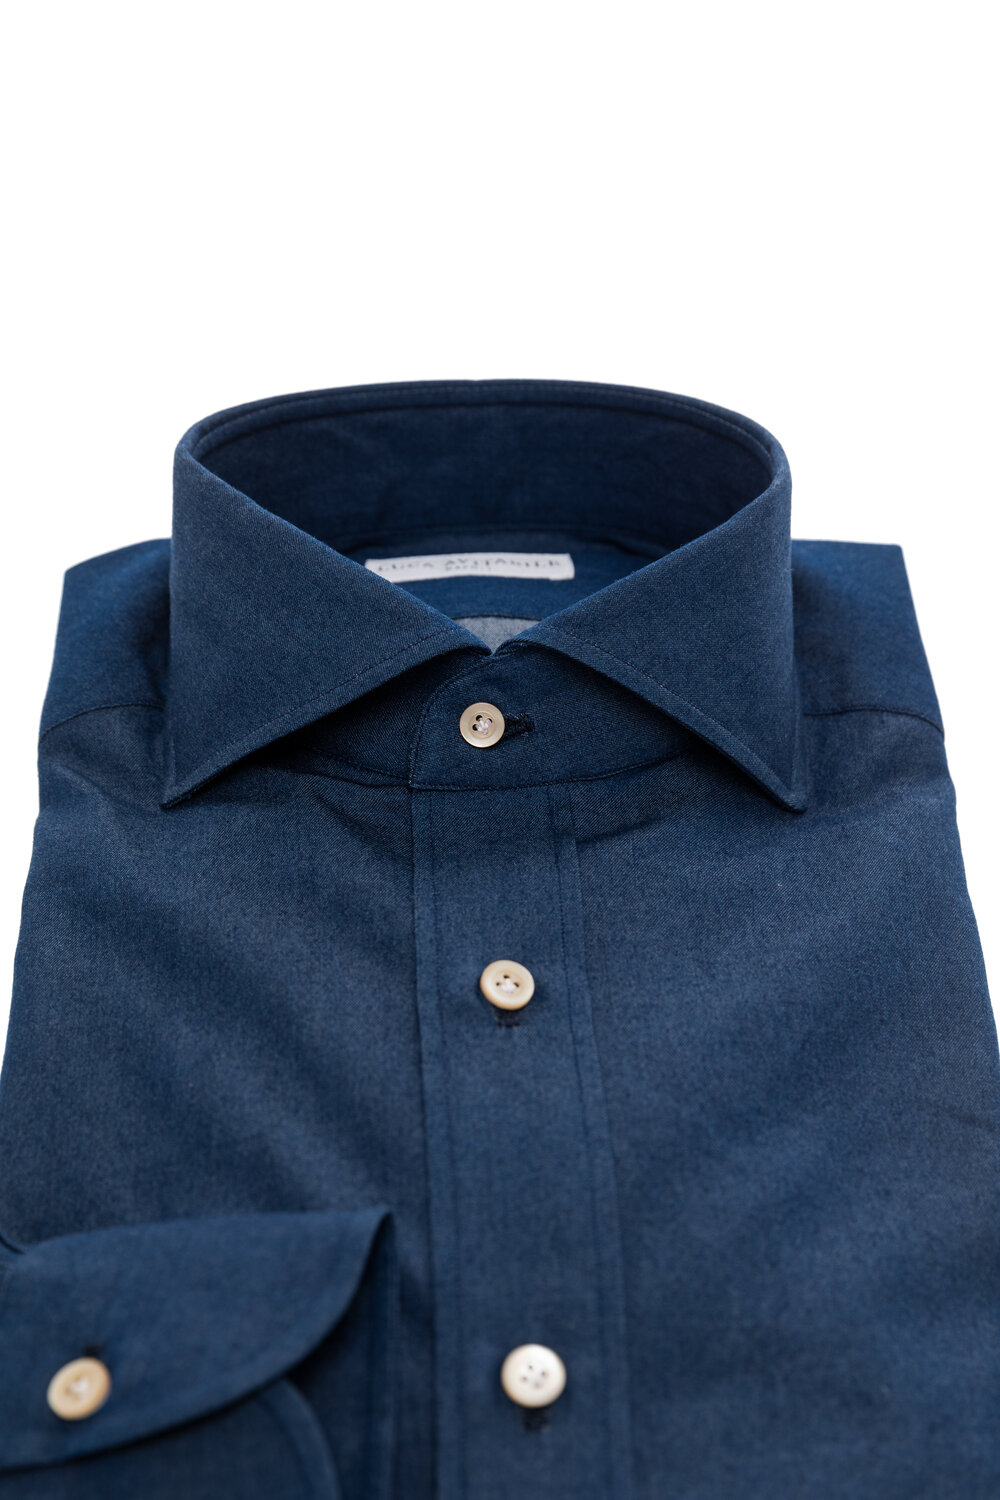 Denim - Indigo Blue Shirt - Luca Avitabile - Handmade Shirt